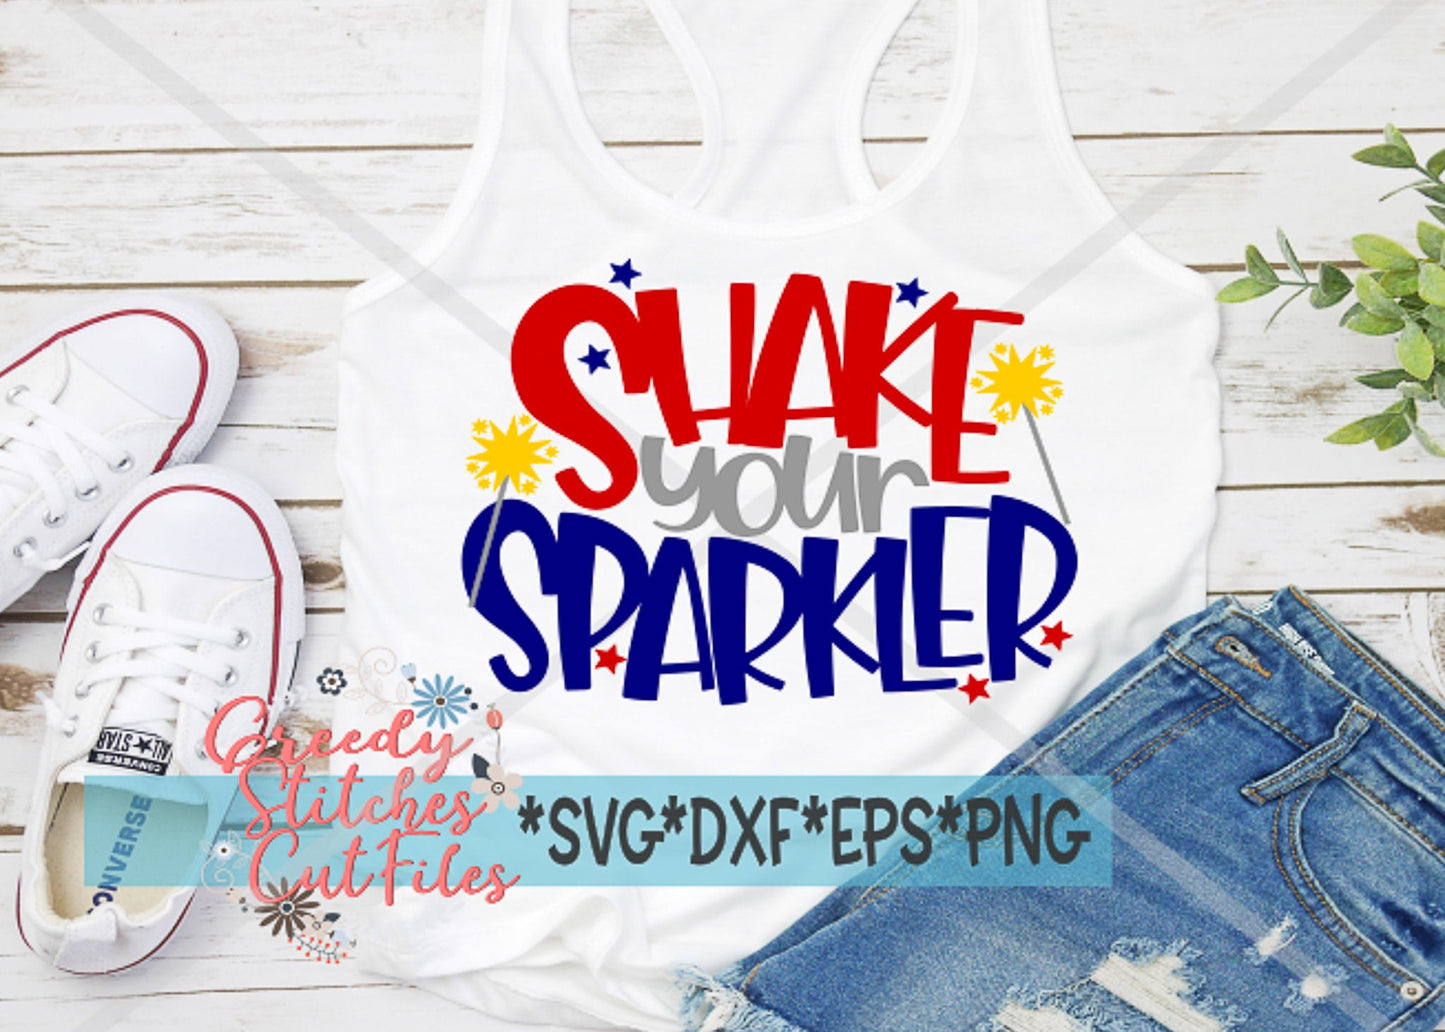 Shake Your Sparkler SvG | July 4th SvG | Sparklers svg, dxf, eps, png. 4th of July SvG | Shake Your Sparkler SVG | Instant Download Cut File